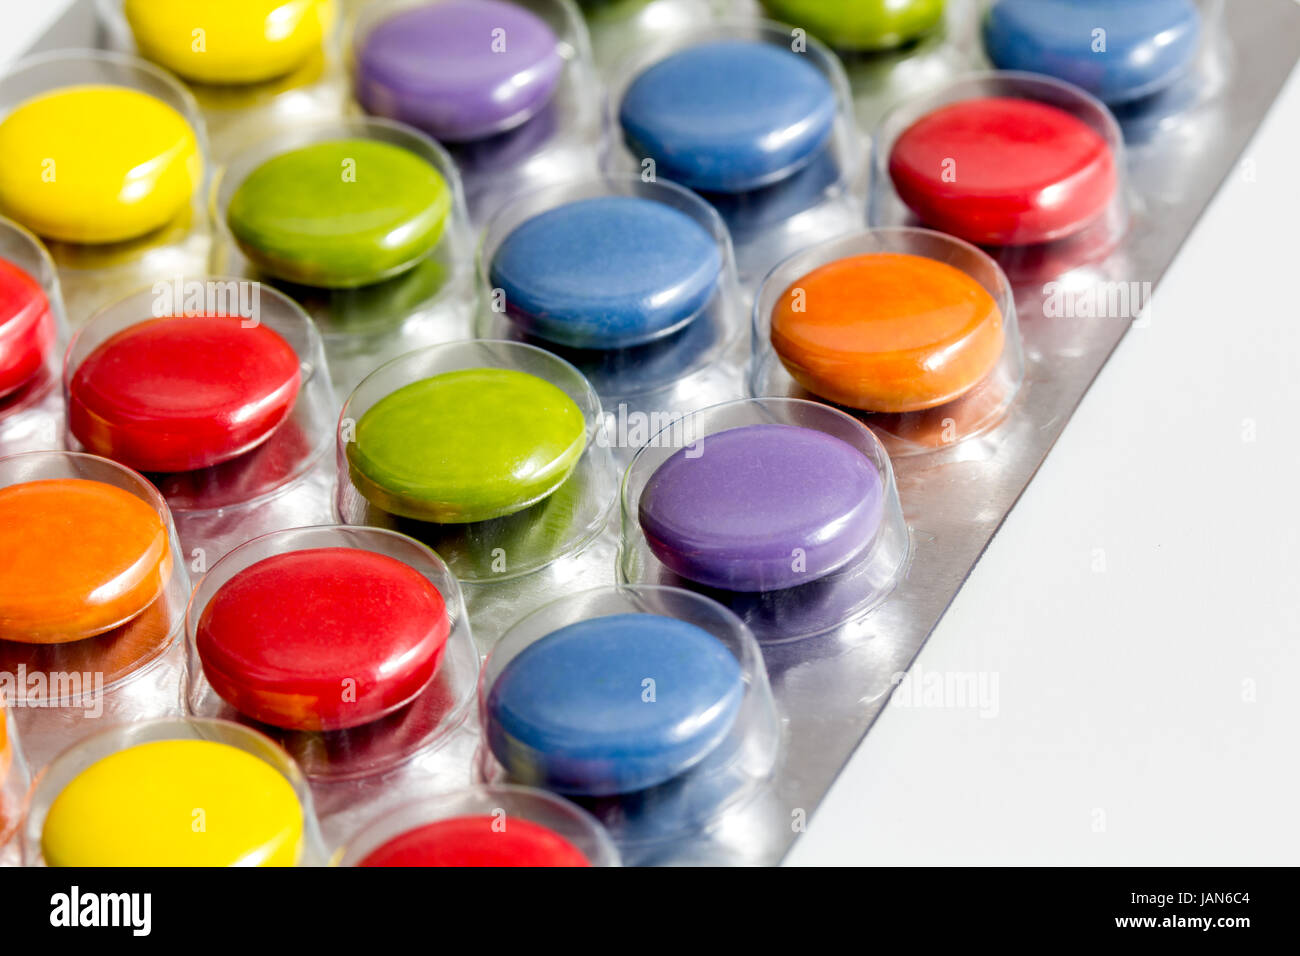 Как называется разноцветные таблетки. Разноцветные таблетки. Разноцветные таблетки название. Разноцветные таблетки для детей. Витамины разноцветные таблетки.